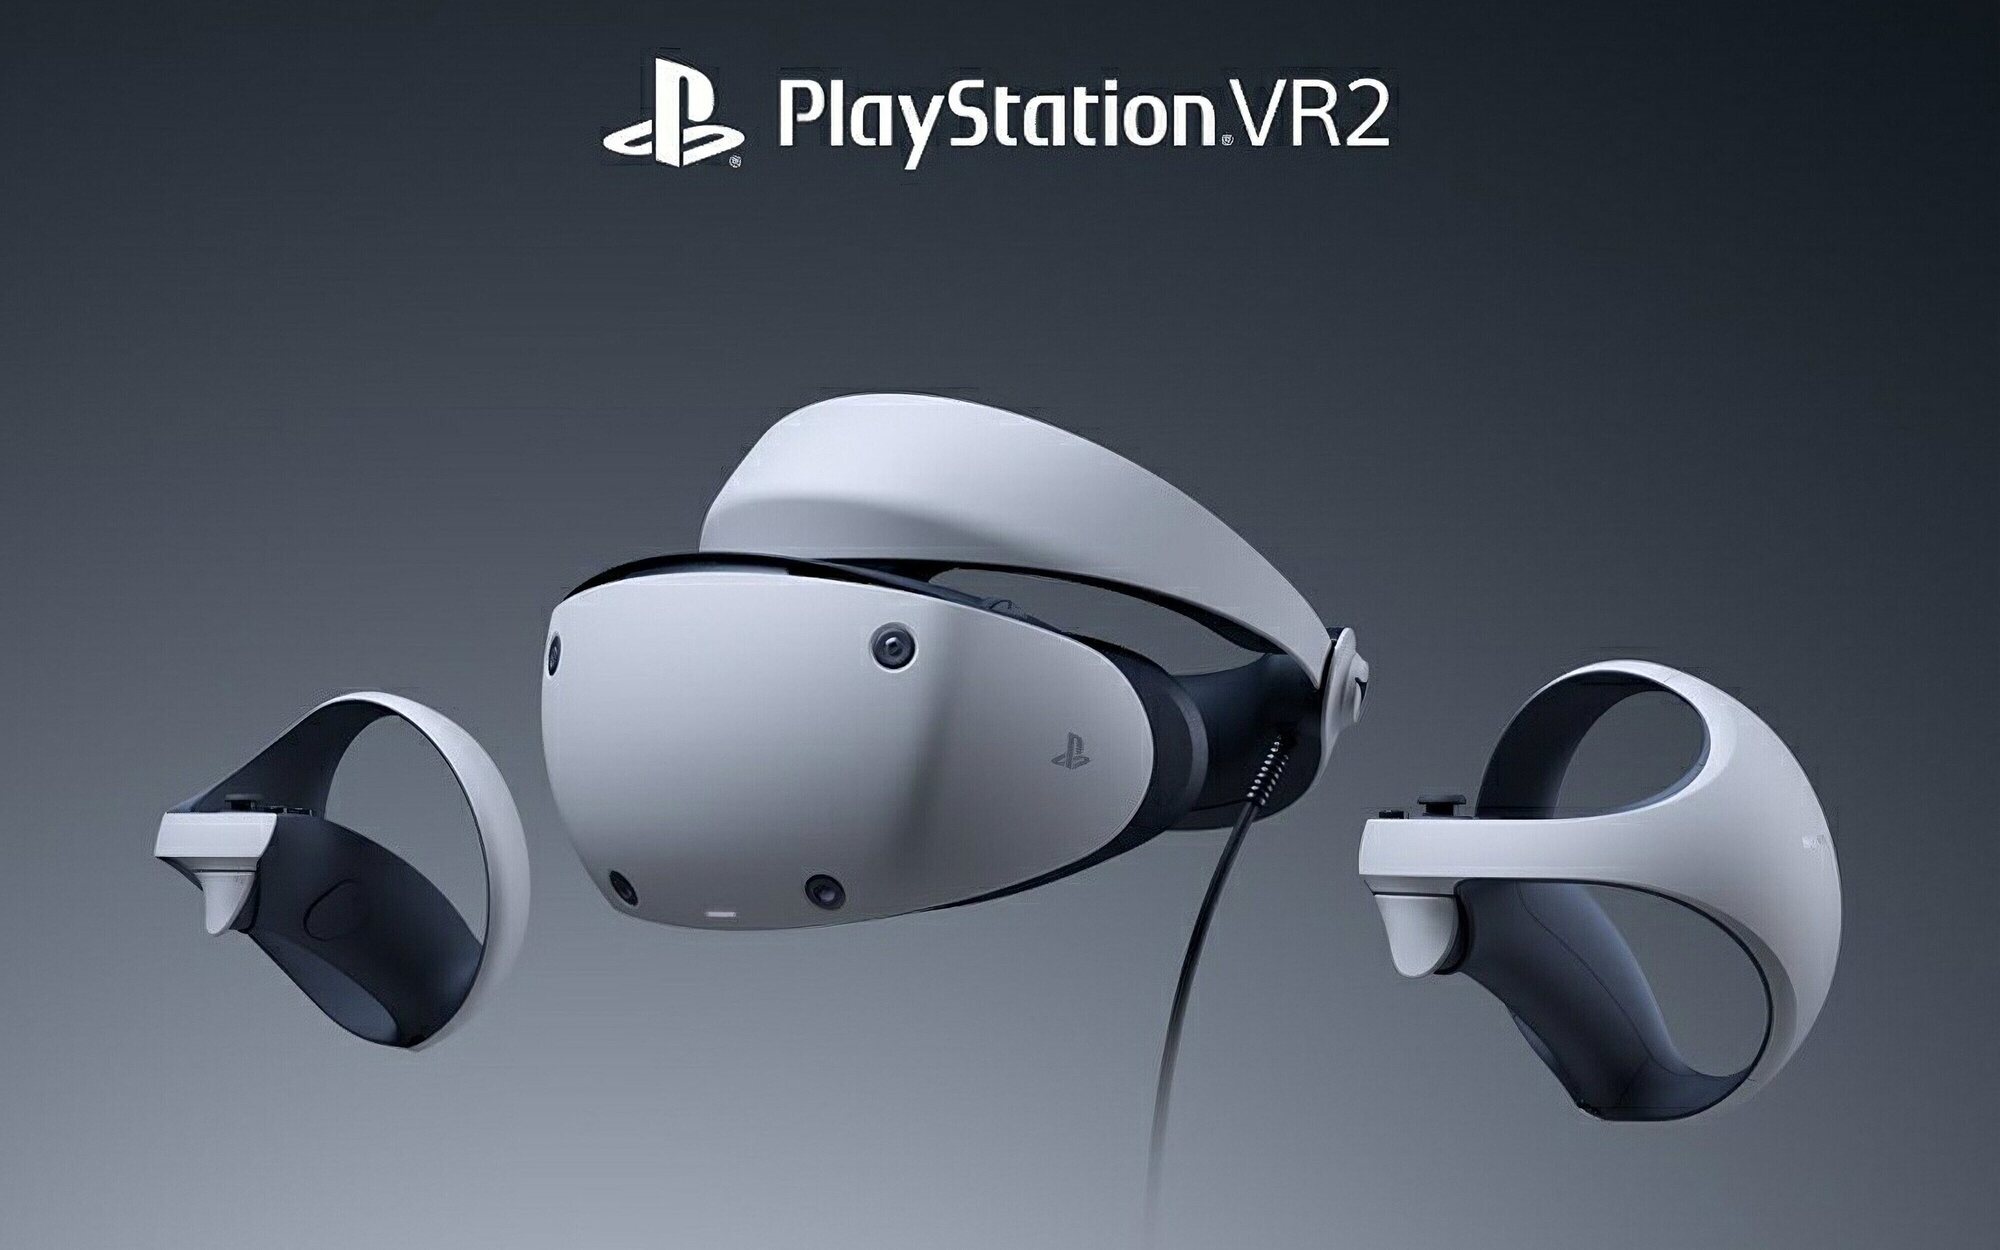 Sony confirma que PlayStation VR 2 se pondrá a la venta a principios de 2023